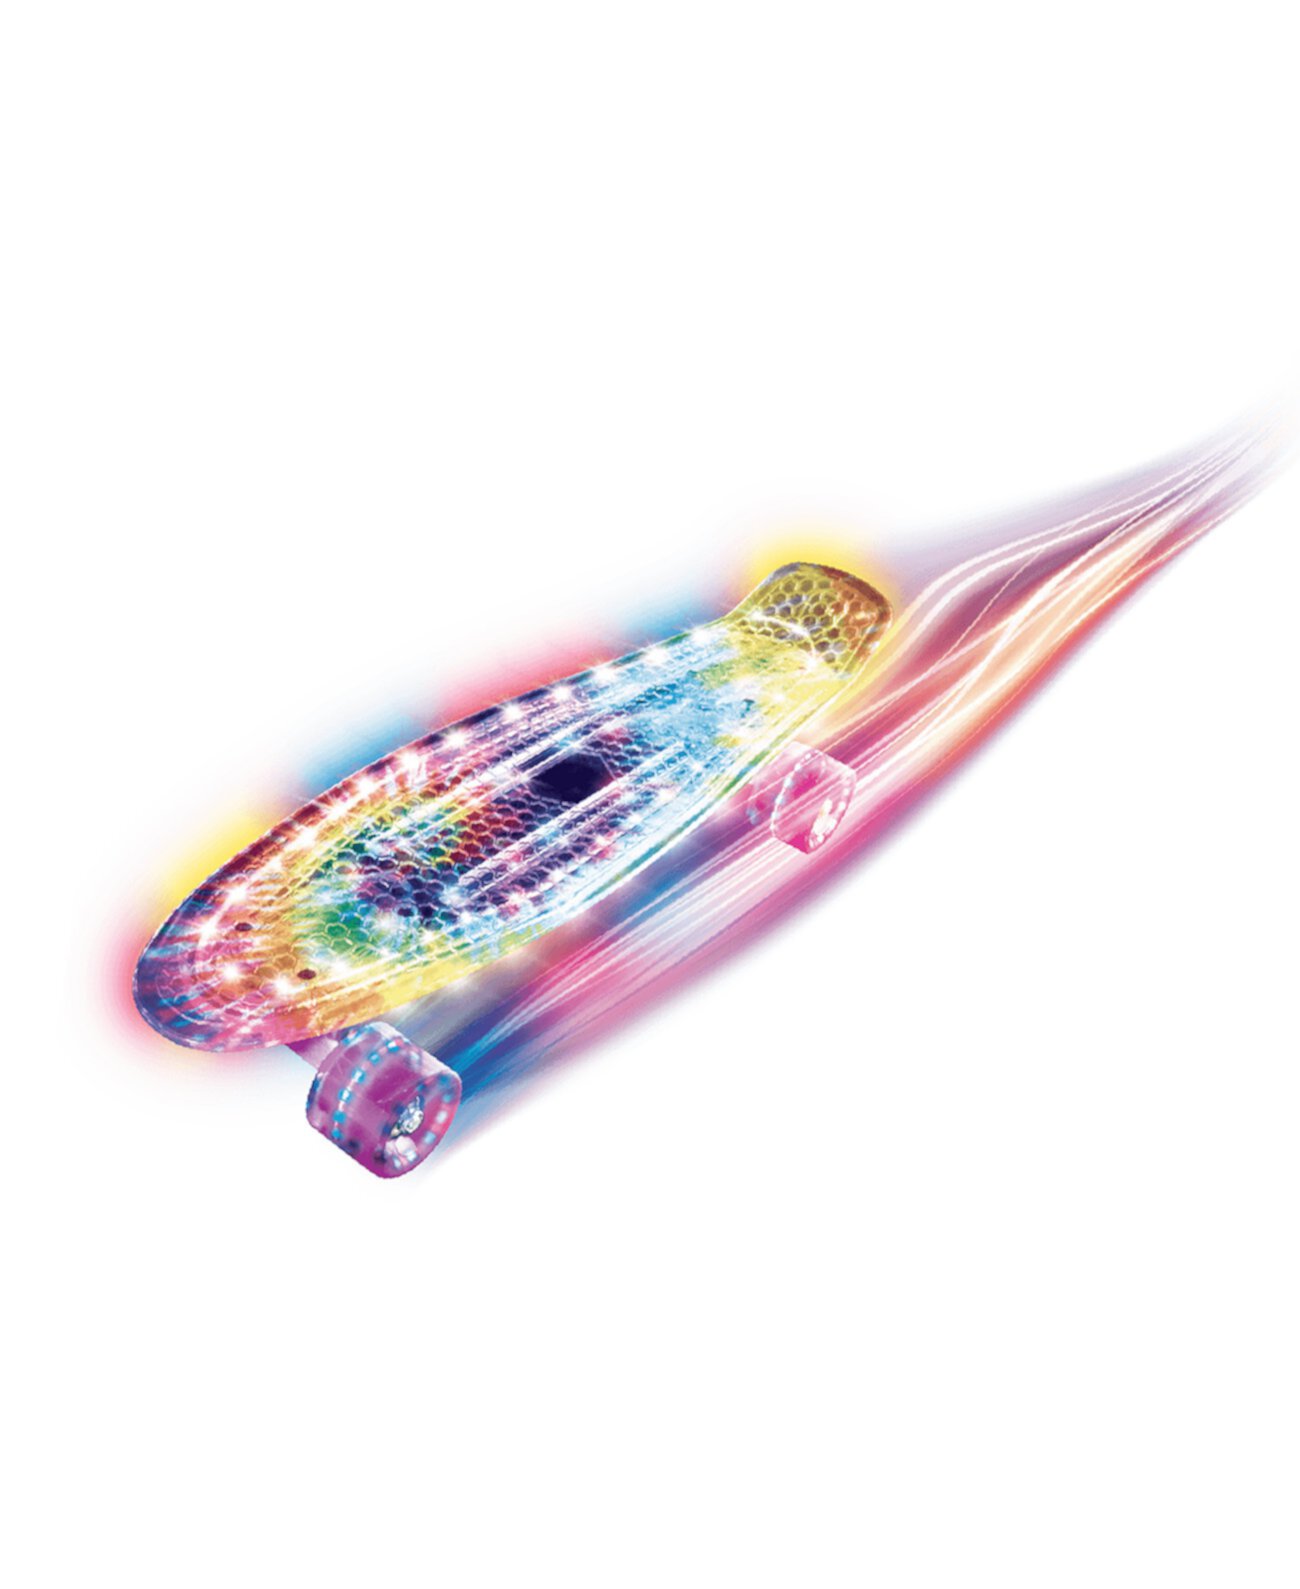 Светодиодный скейтборд Rainbow, созданный для Macy's GENESIS